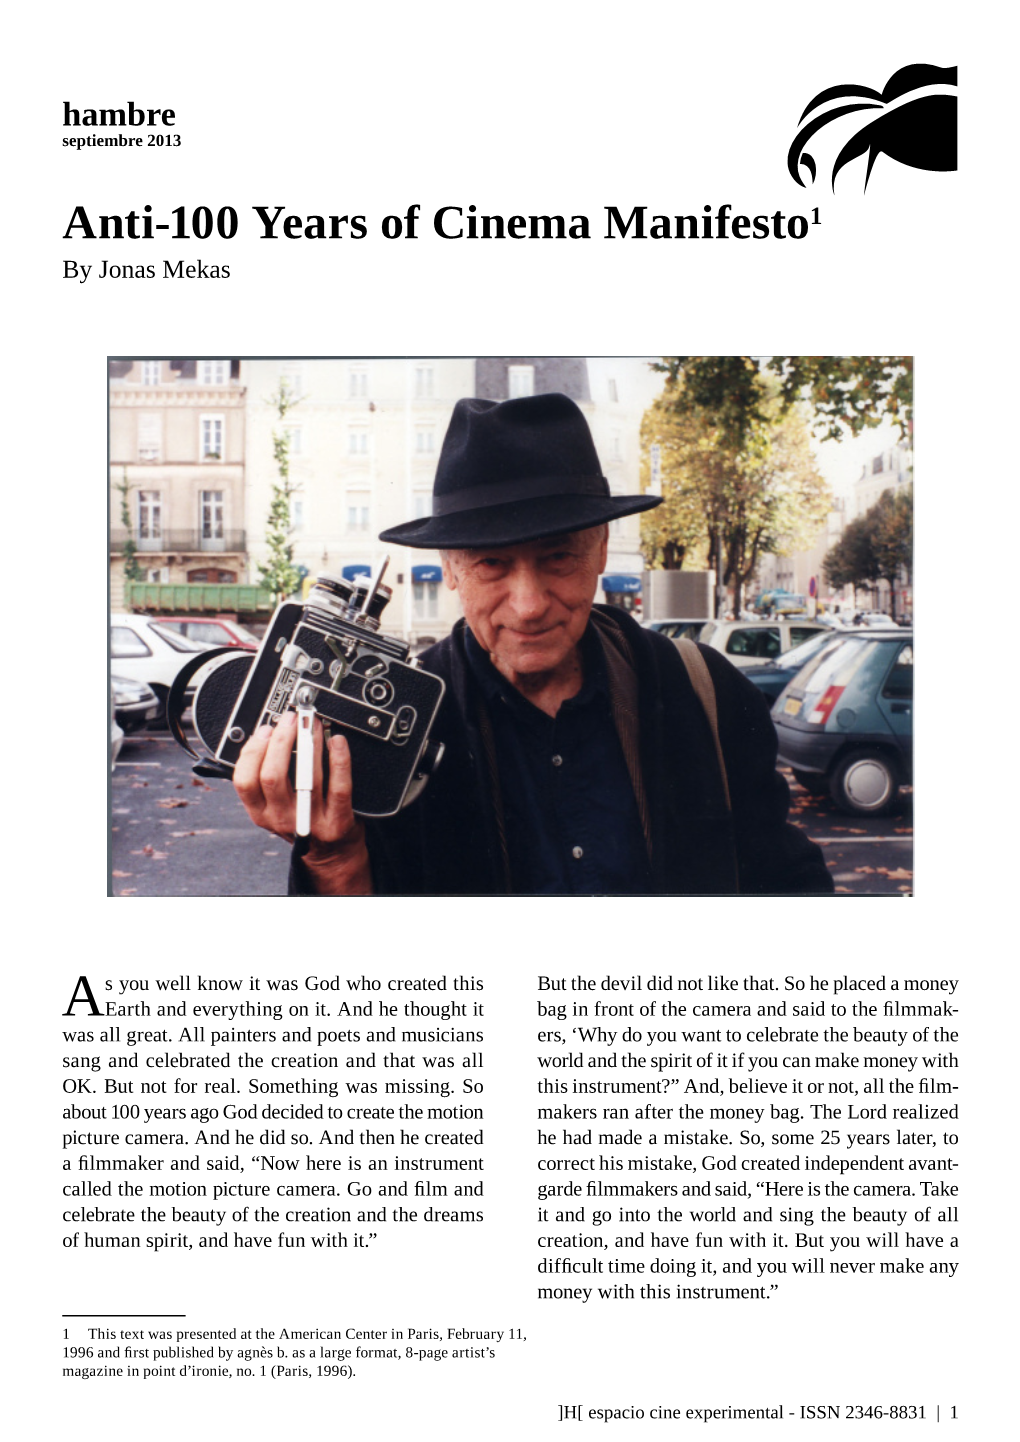 Anti-100 Years of Cinema Manifesto1 by Jonas Mekas